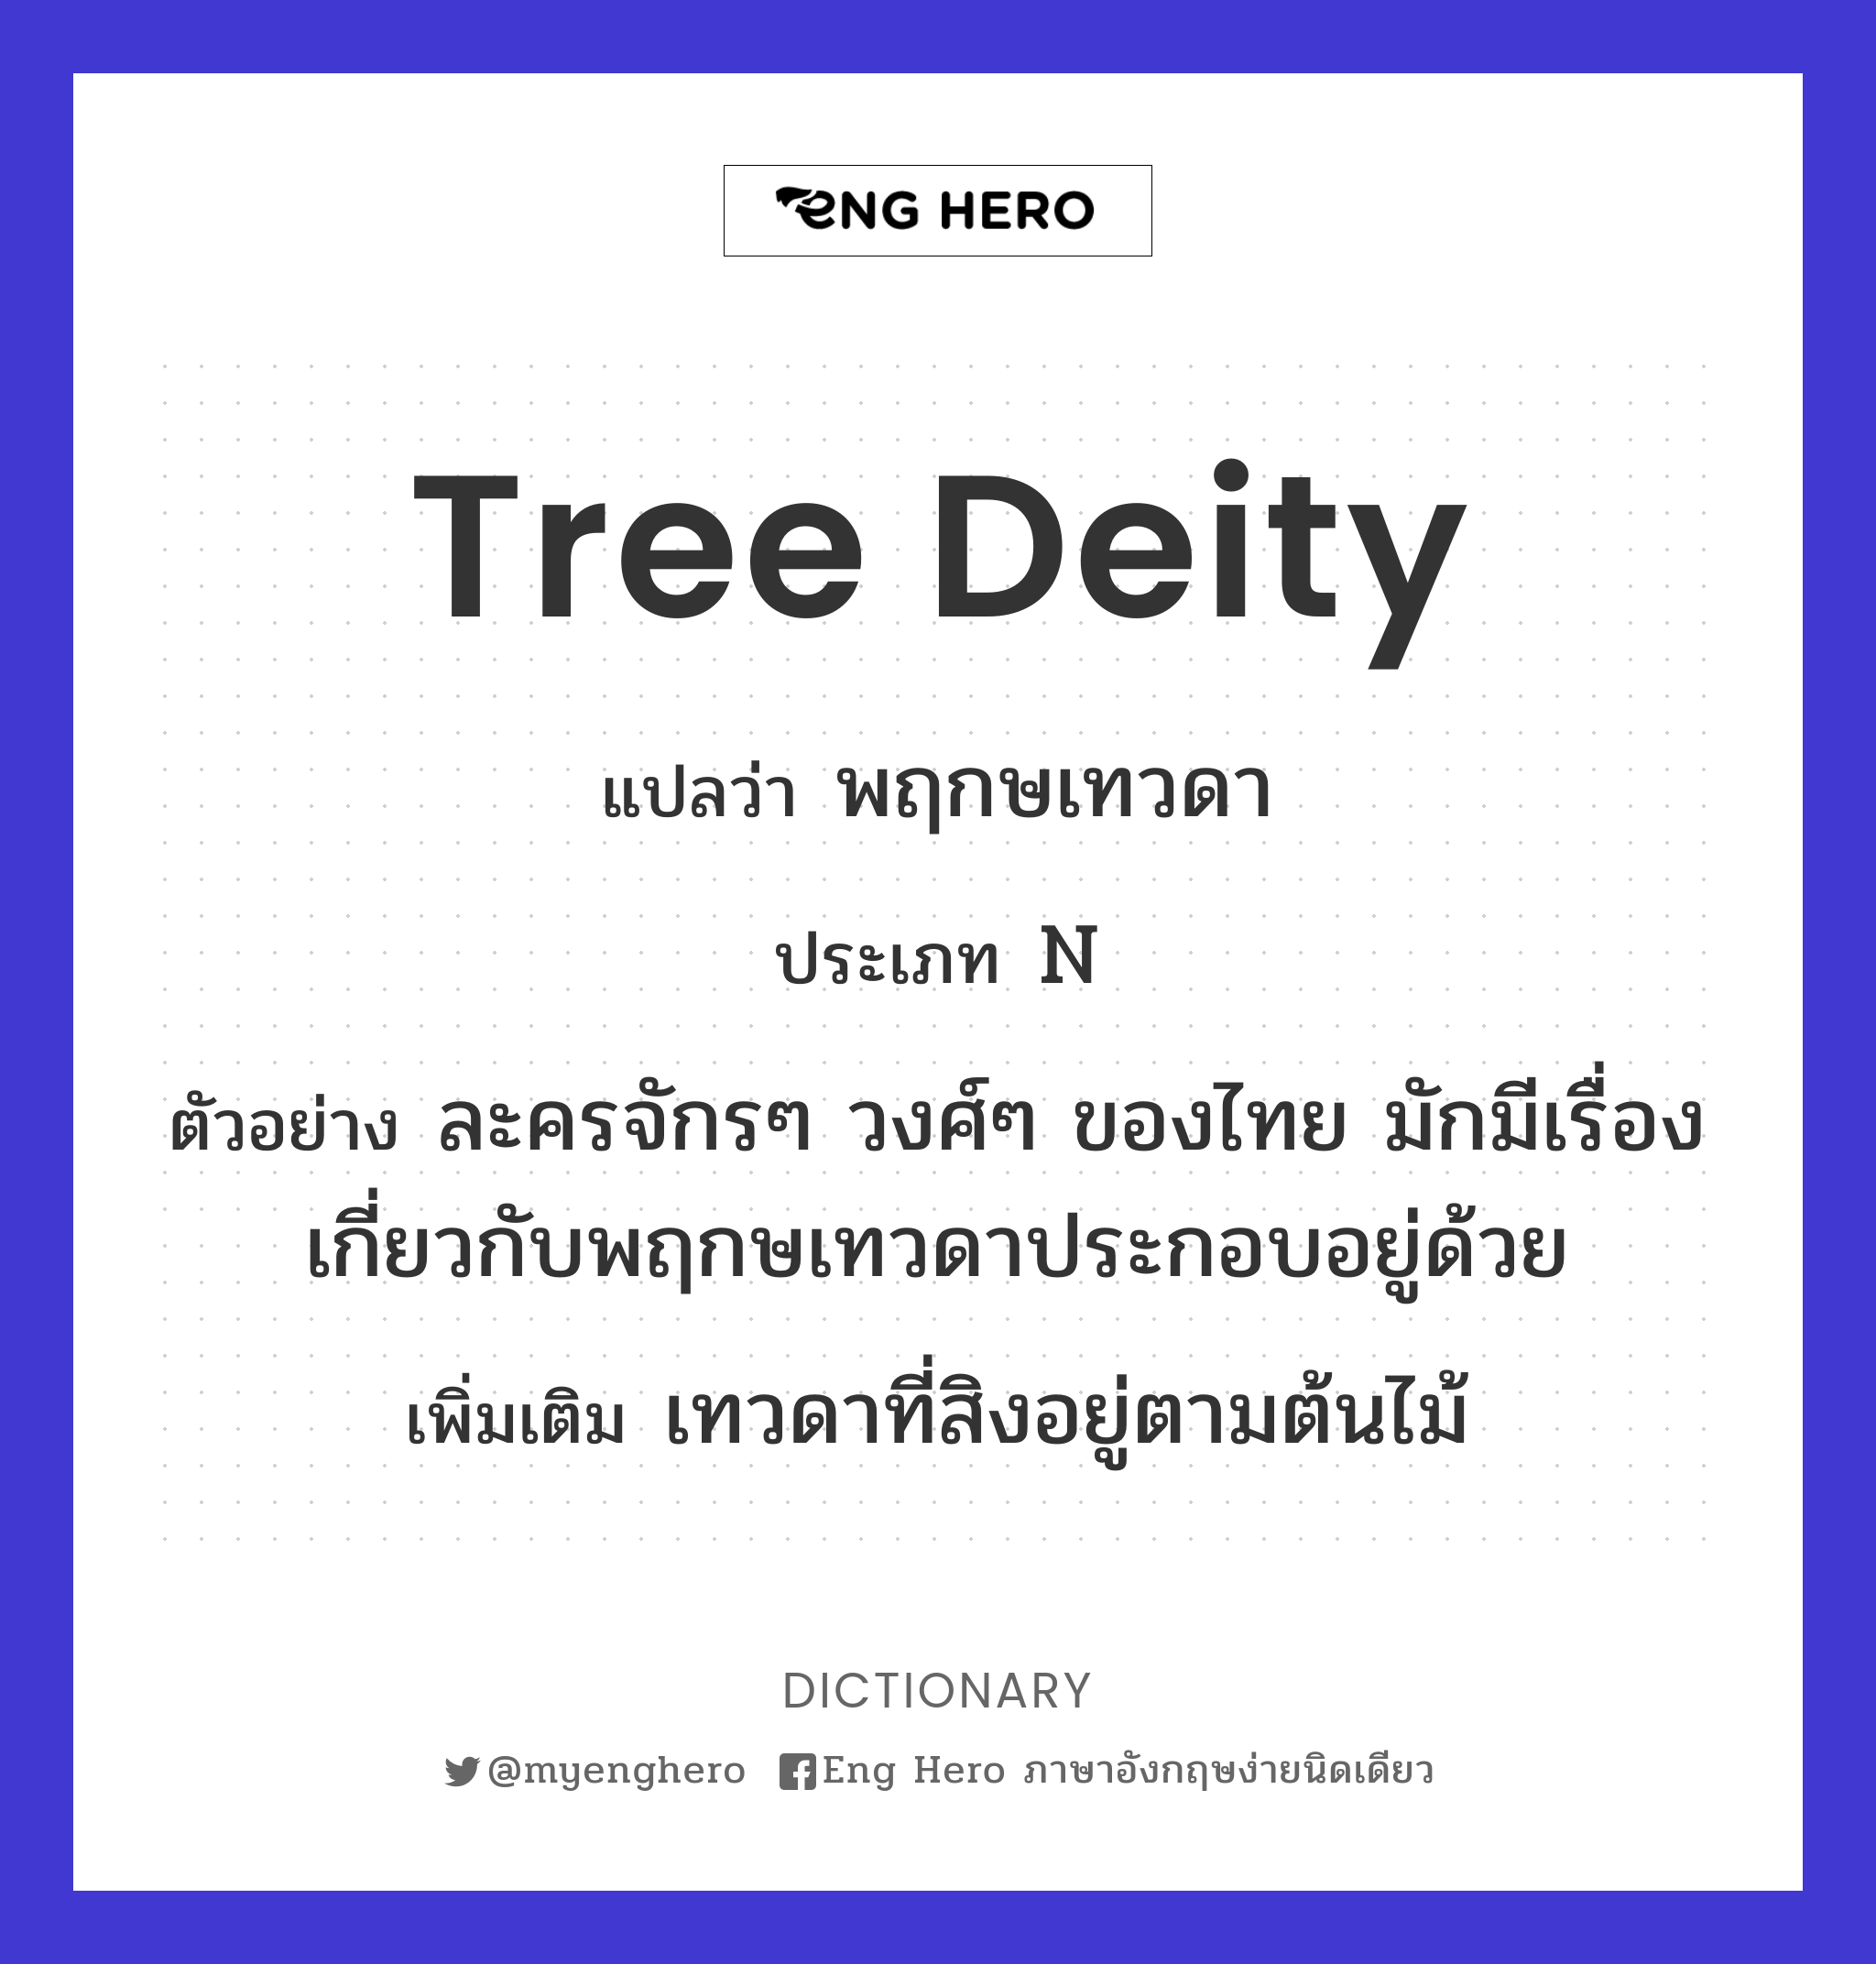 tree deity